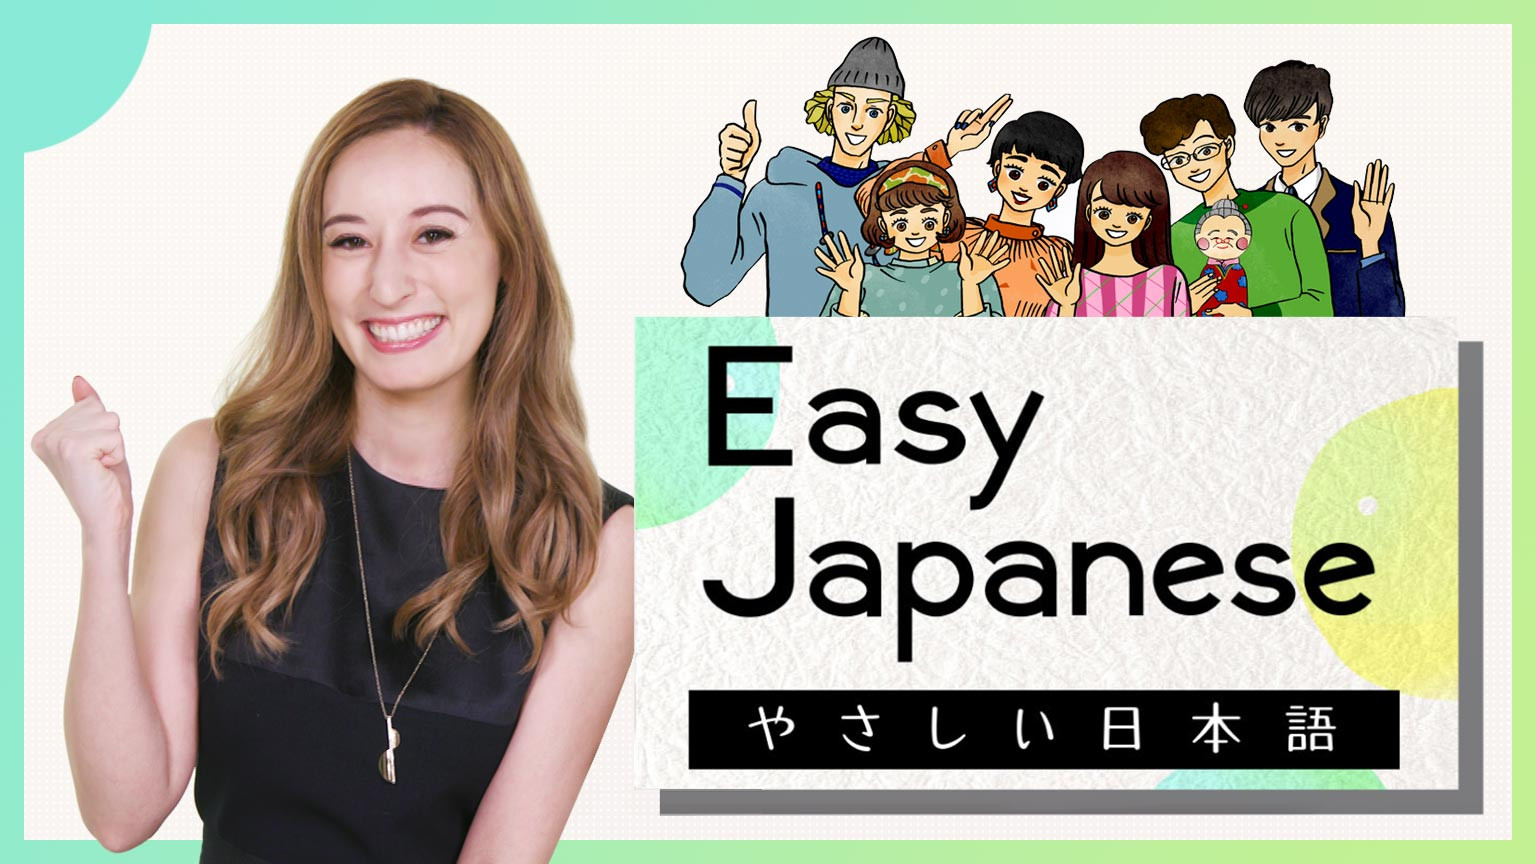 簡明日語
Easy Japanese